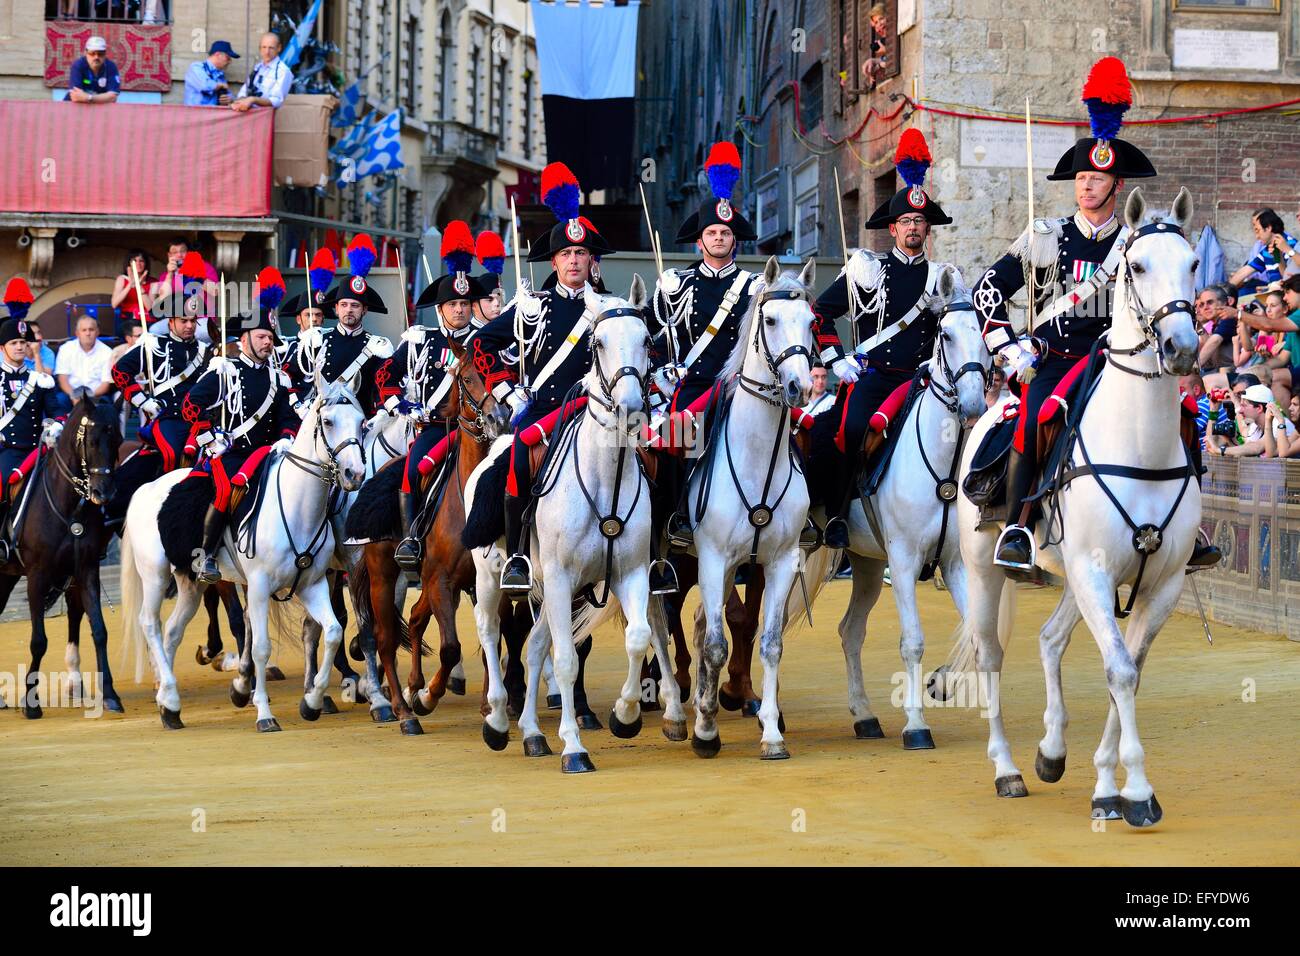 Canada dragoons lors d'un défilé historique avant la course de chevaux Palio de Sienne, la Piazza del Campo, Sienne, Toscane, Italie Banque D'Images